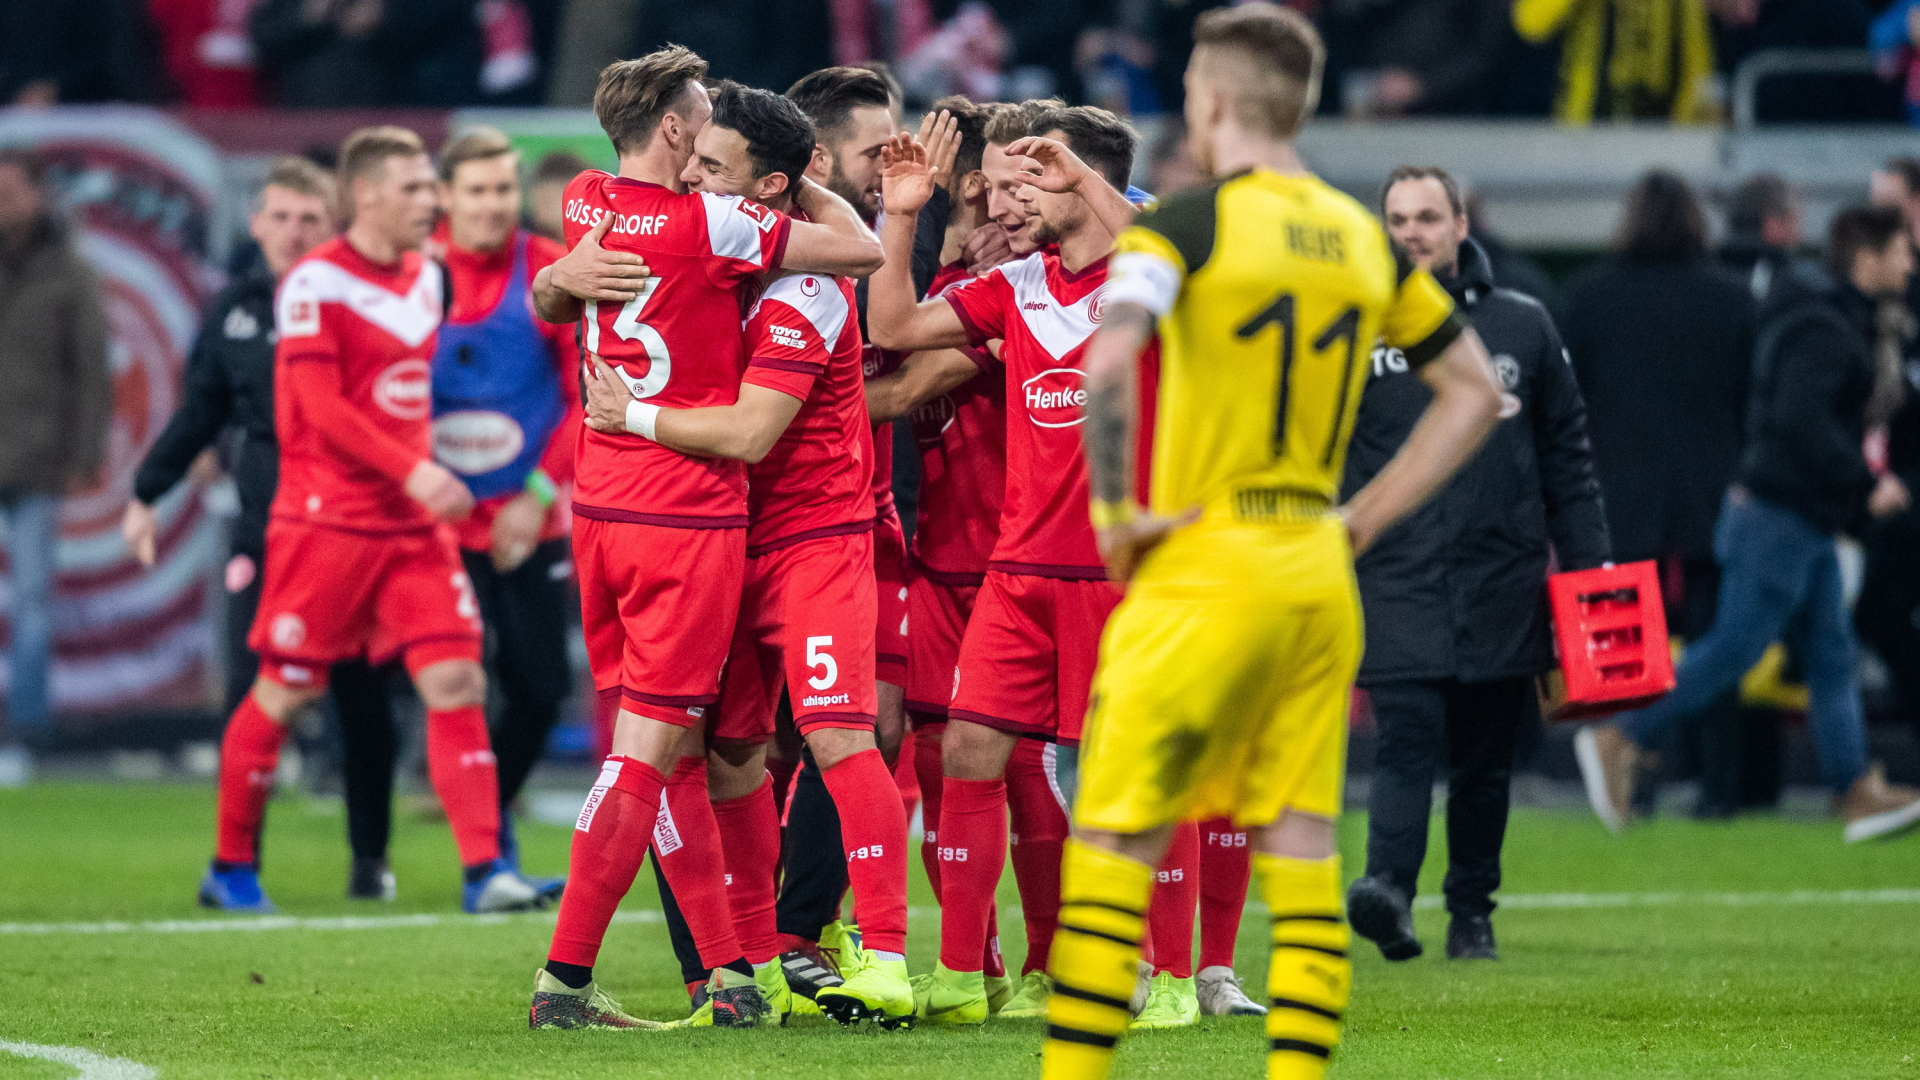 Spieler der Fortuna Düsseldorf umarmen sich. | Bildquelle: dpa